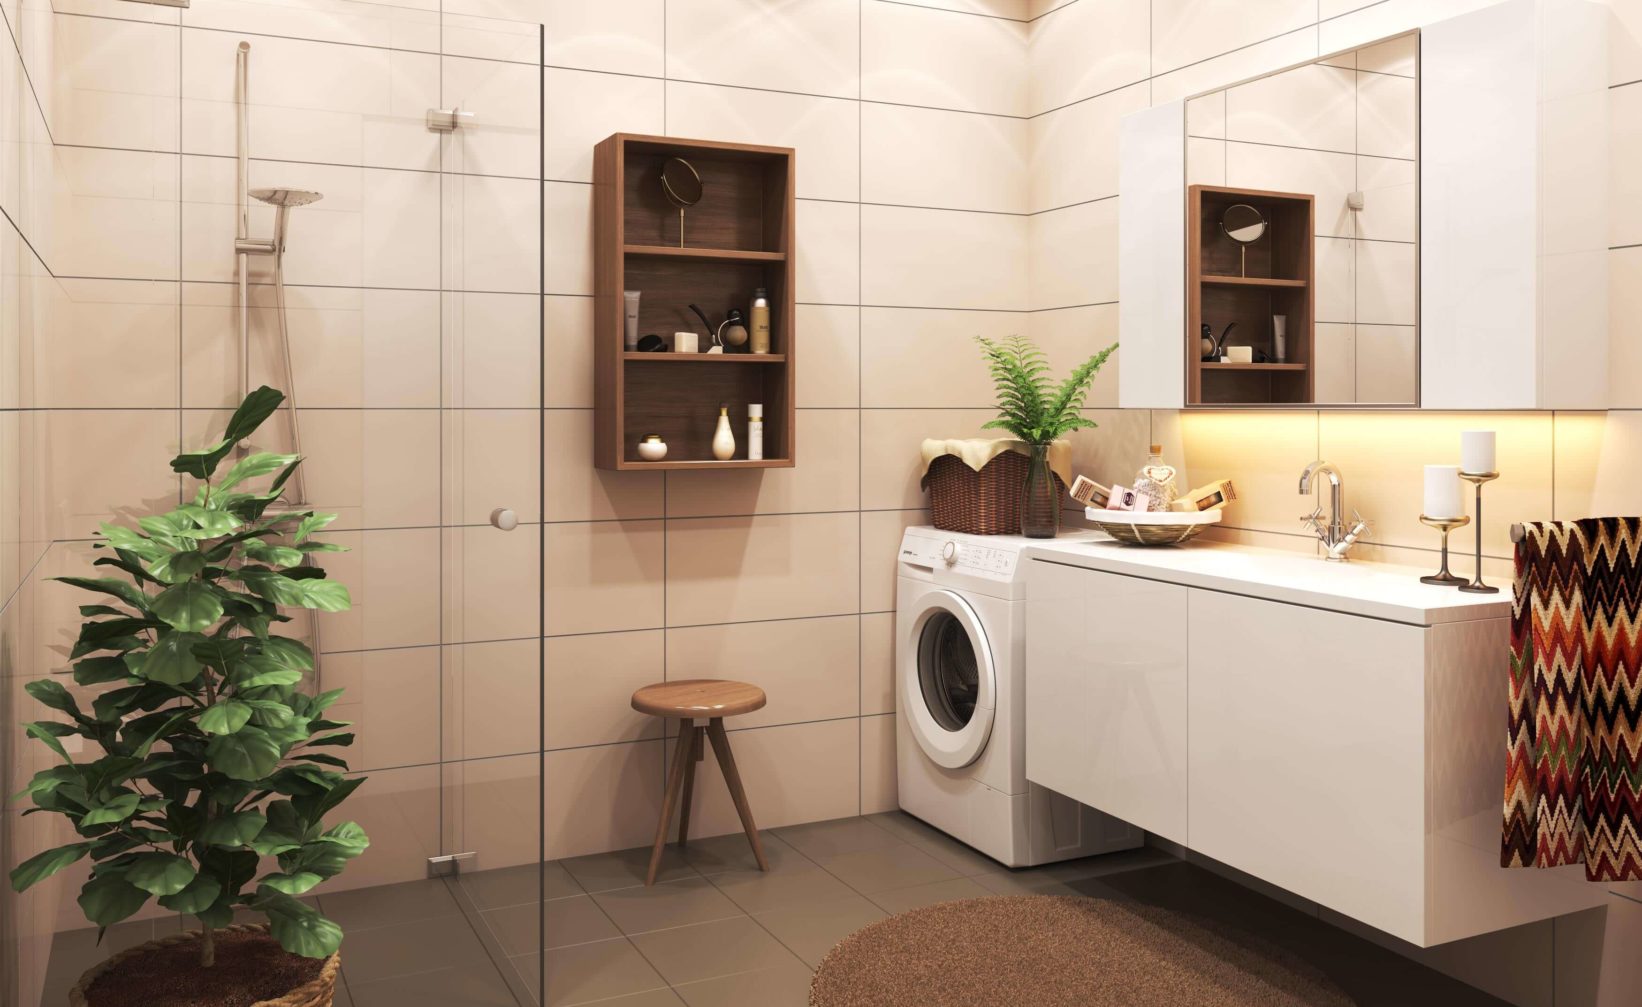 Et bad med vaskemaskin og tørketrommel, designet for visualiseringsformål i salgsprosessen av HAW Entreprenør AS i 2017.